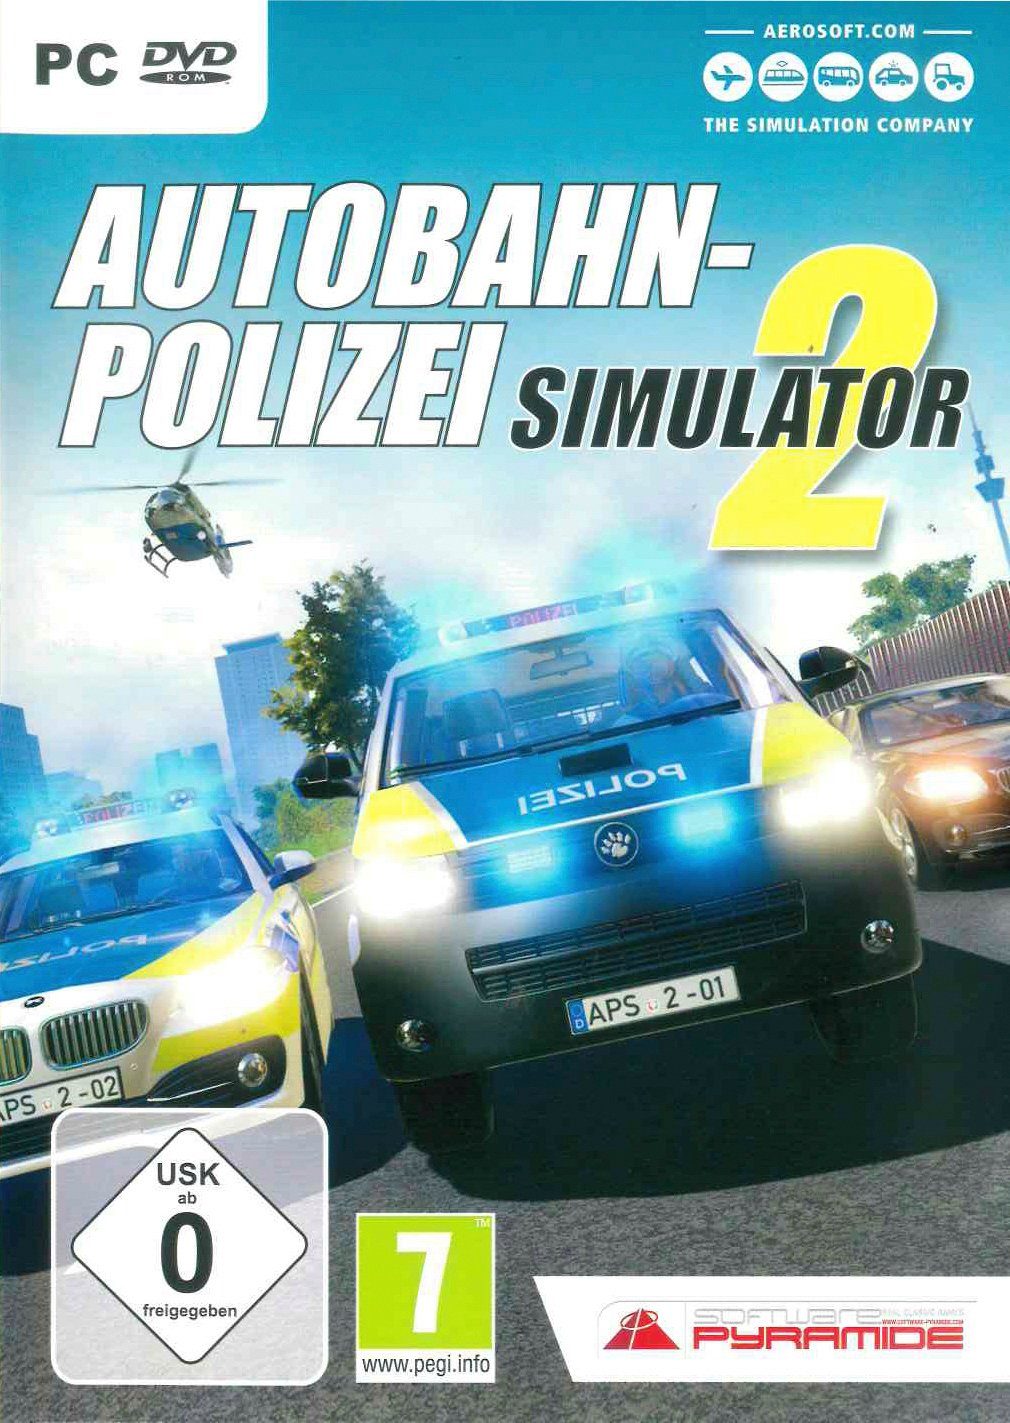 Simulator Autobahn-Polizei PC 2